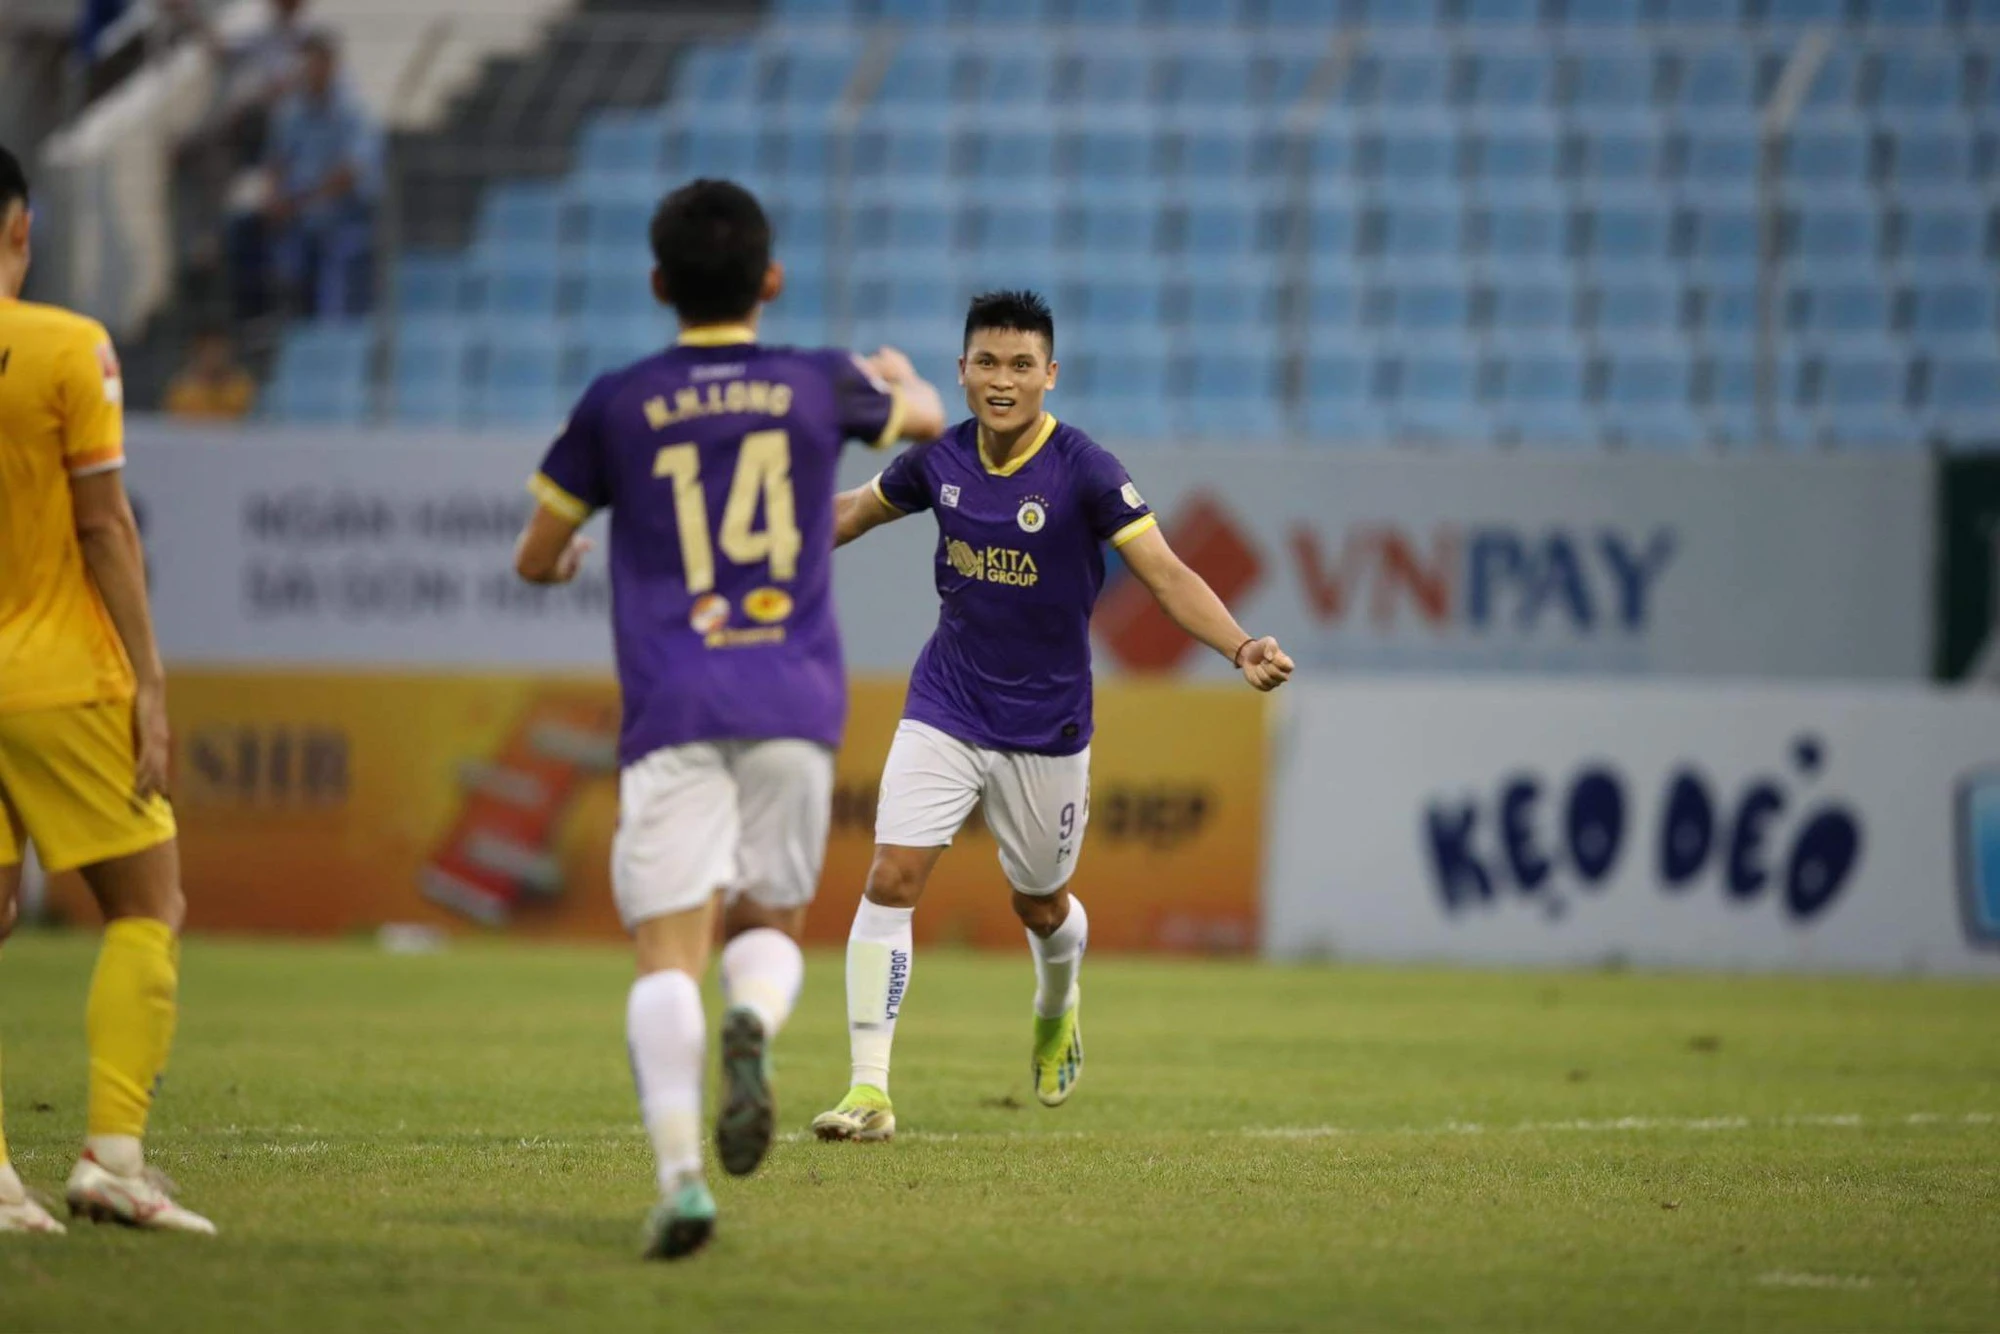 V-League: CLB Hà Nội trở lại cuộc đua vô địch, HAGL vẫn nguy cơ phải đá play-off